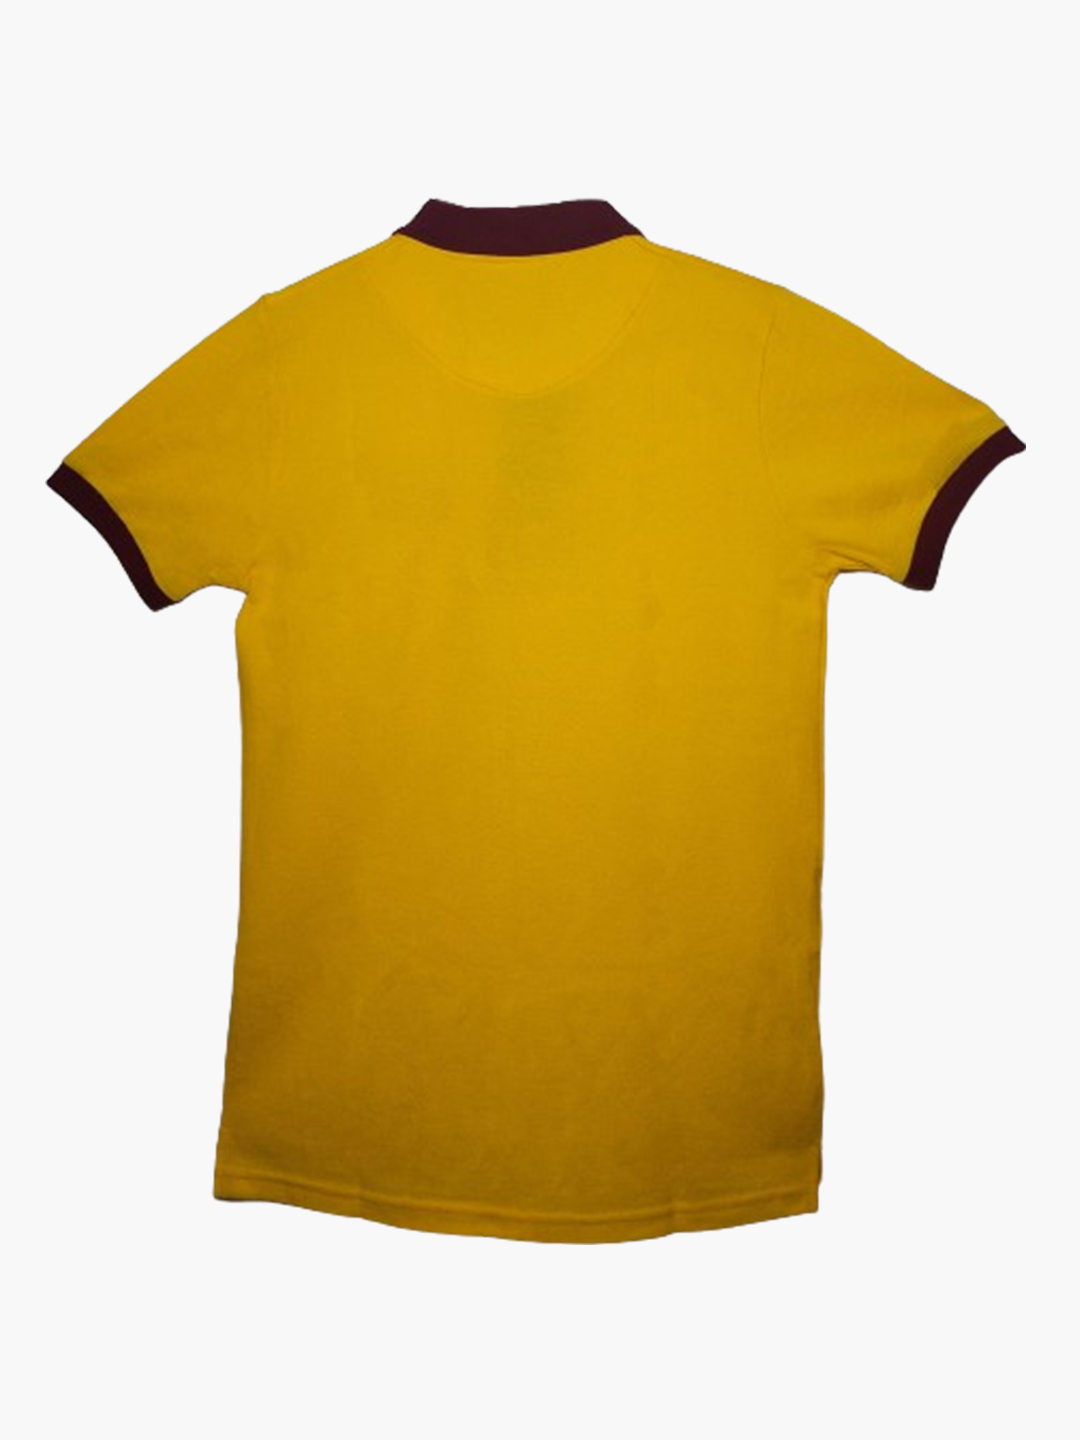 Pique Polo Tshirt Yellow 2.jpg